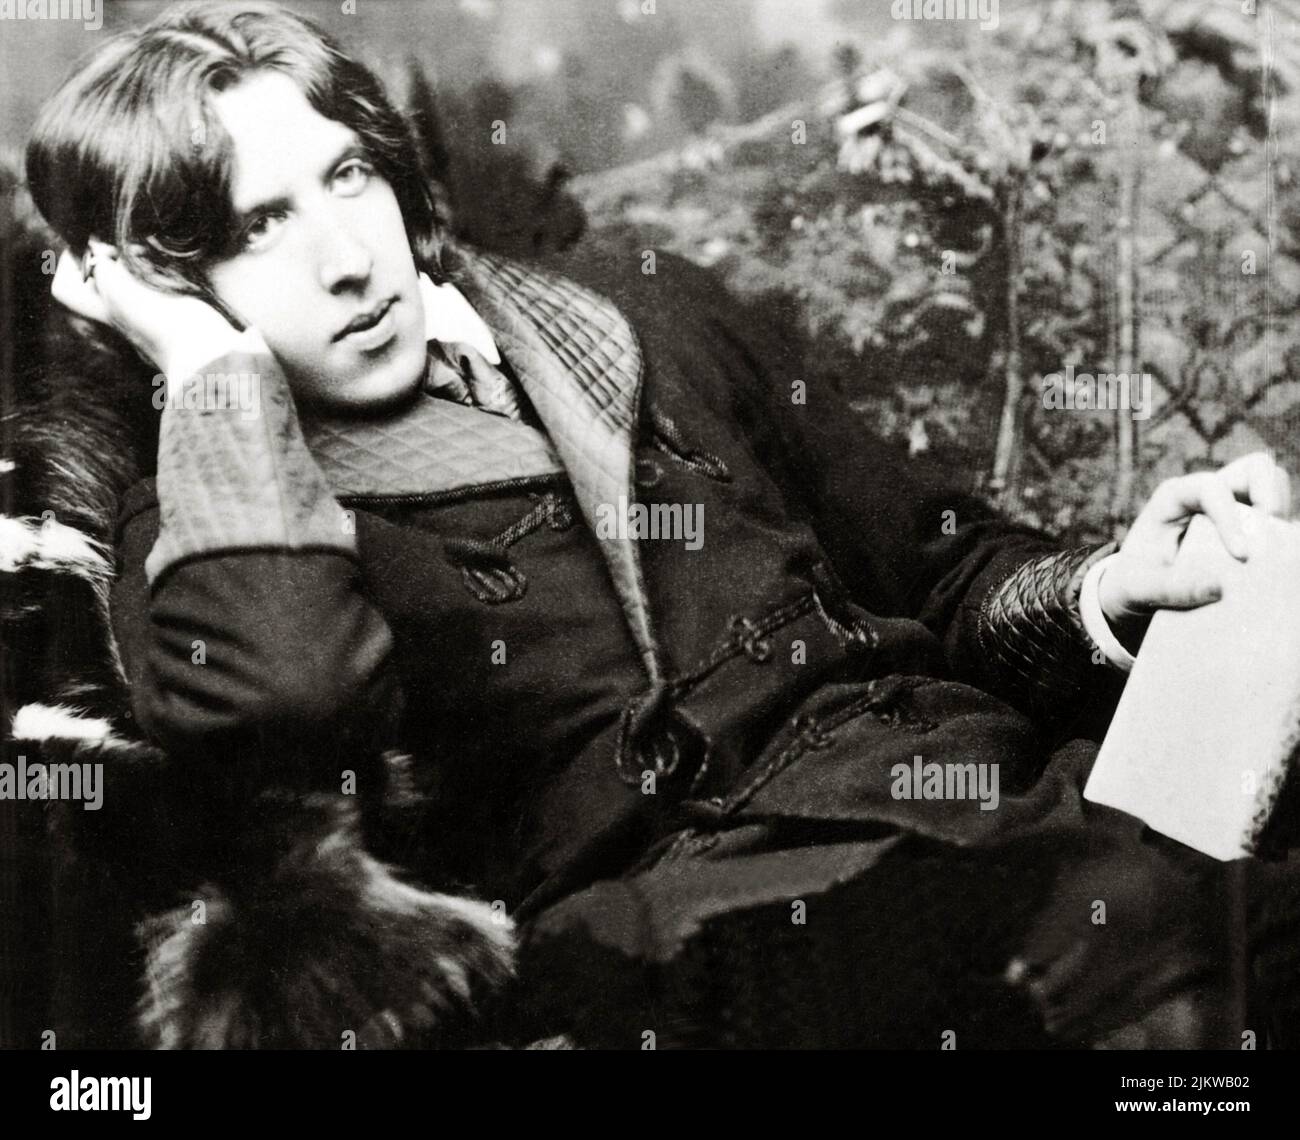 1882 , Nueva York , Estados Unidos : el escritor y dramaturgo irlandés OSCAR WILDE ( 1854 - 1900 ) , Foto de Napoleon Sarony - SCRITTORE - LETTERATURA - LITERATURA - POETA - POETA - POESIA - drammaturgo - dramaturgo - escritor - TEATRO - TEATRO - POESÍA - DANDY - GAY - HOMOSEXUALIDAD - HOMOSEXUAL - omosessuale - omosessualità - lector - pensador - libro - pensatore - Lettore - Libro ---- Archivio GBB Foto de stock